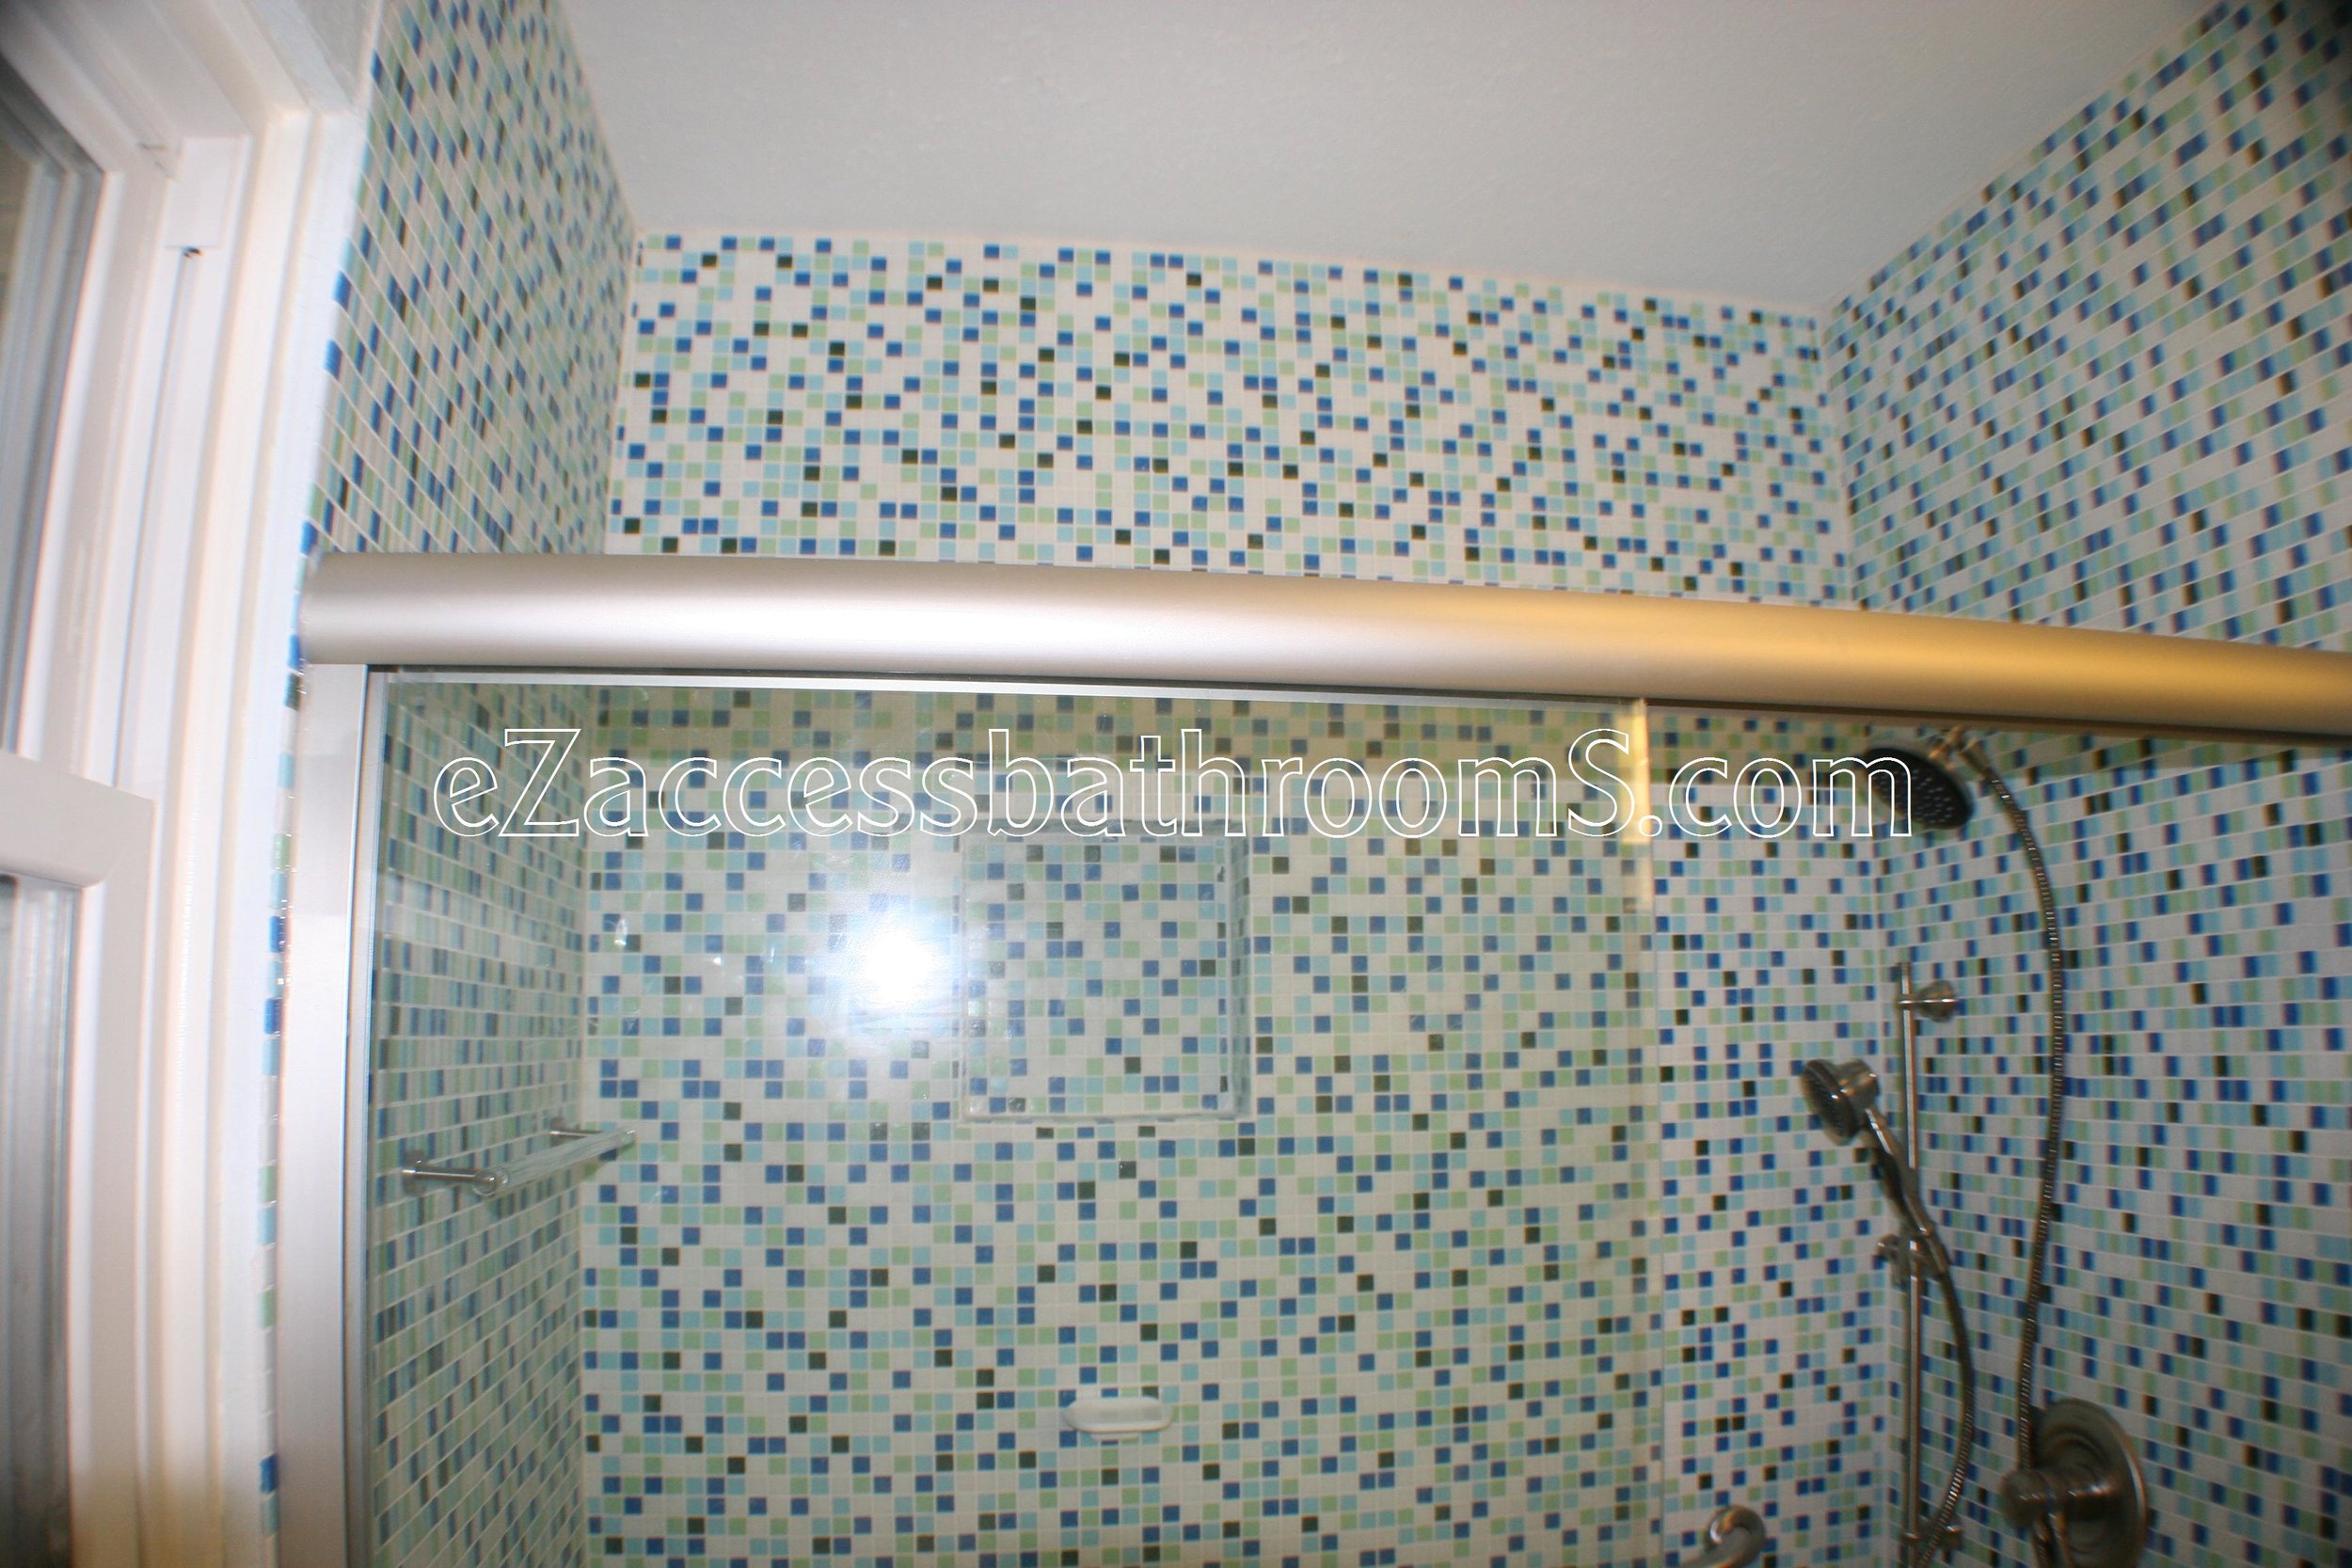 rollin shower ezaccessbathrooms.com 0022.JPG